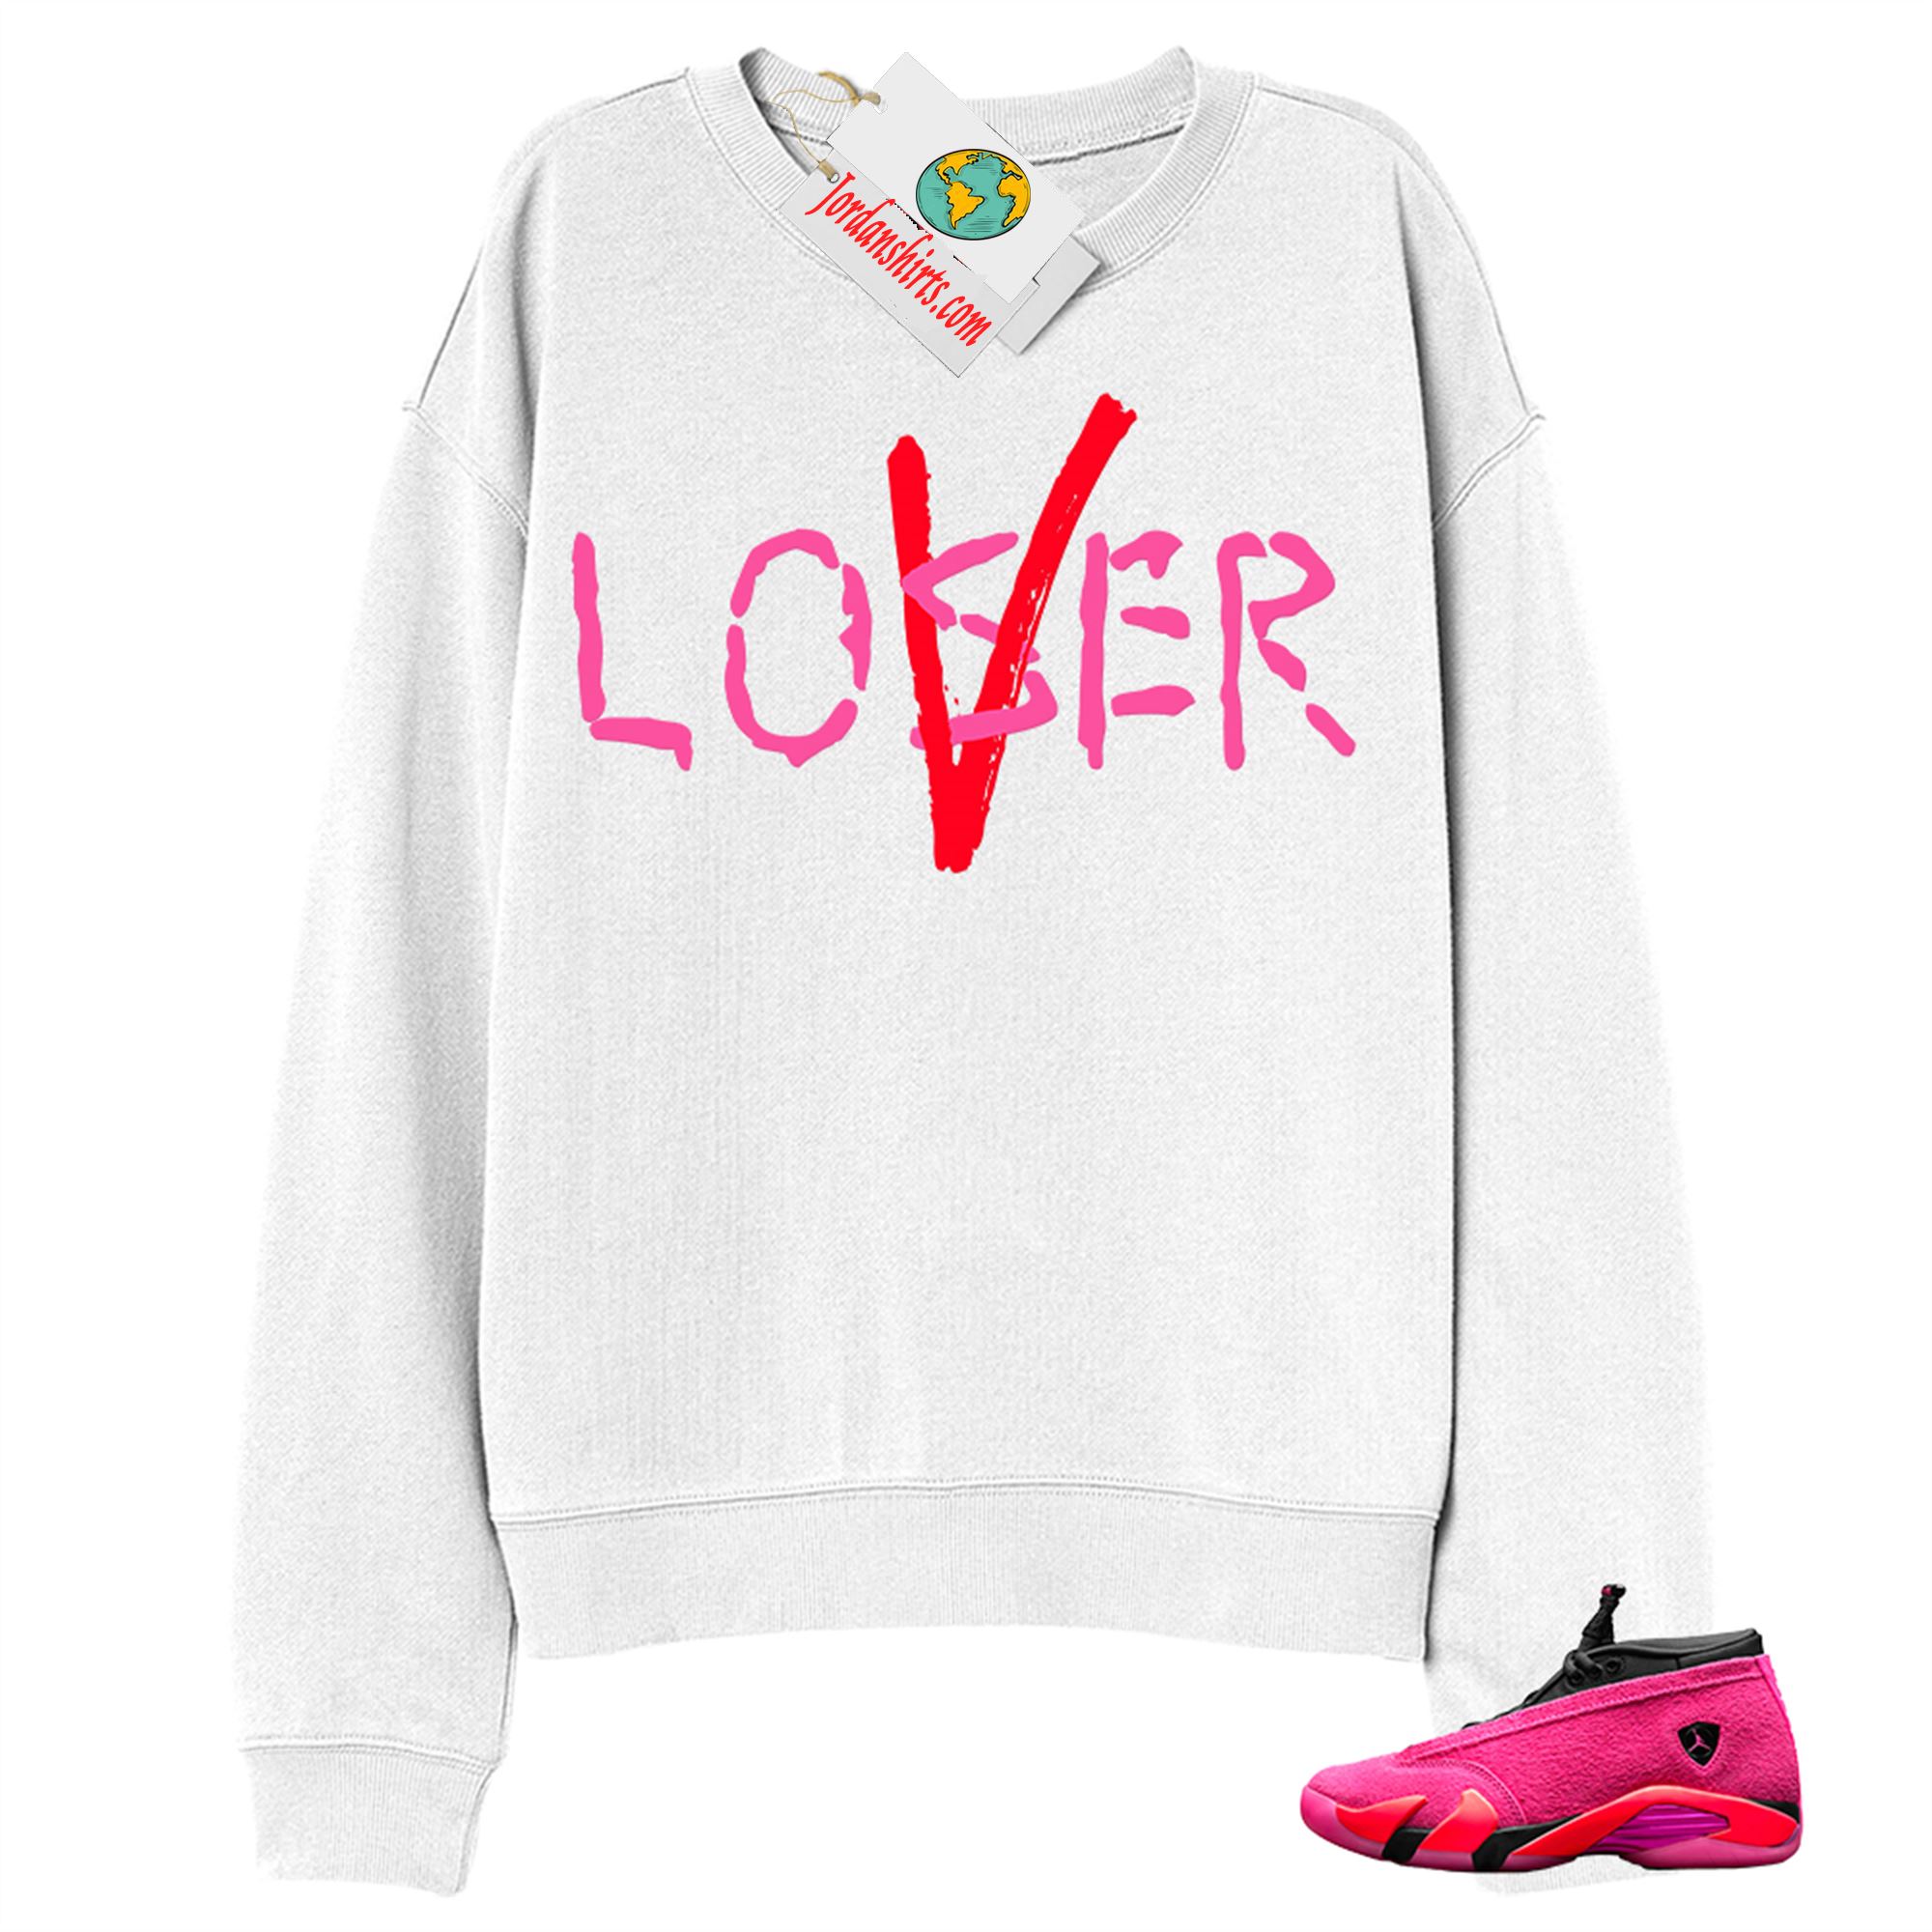 Jordan 14 Sweatshirt, Love A Loser White Sweatshirt Air Jordan 14 Wmns Shocking Pink 14s Size Up To 5xl